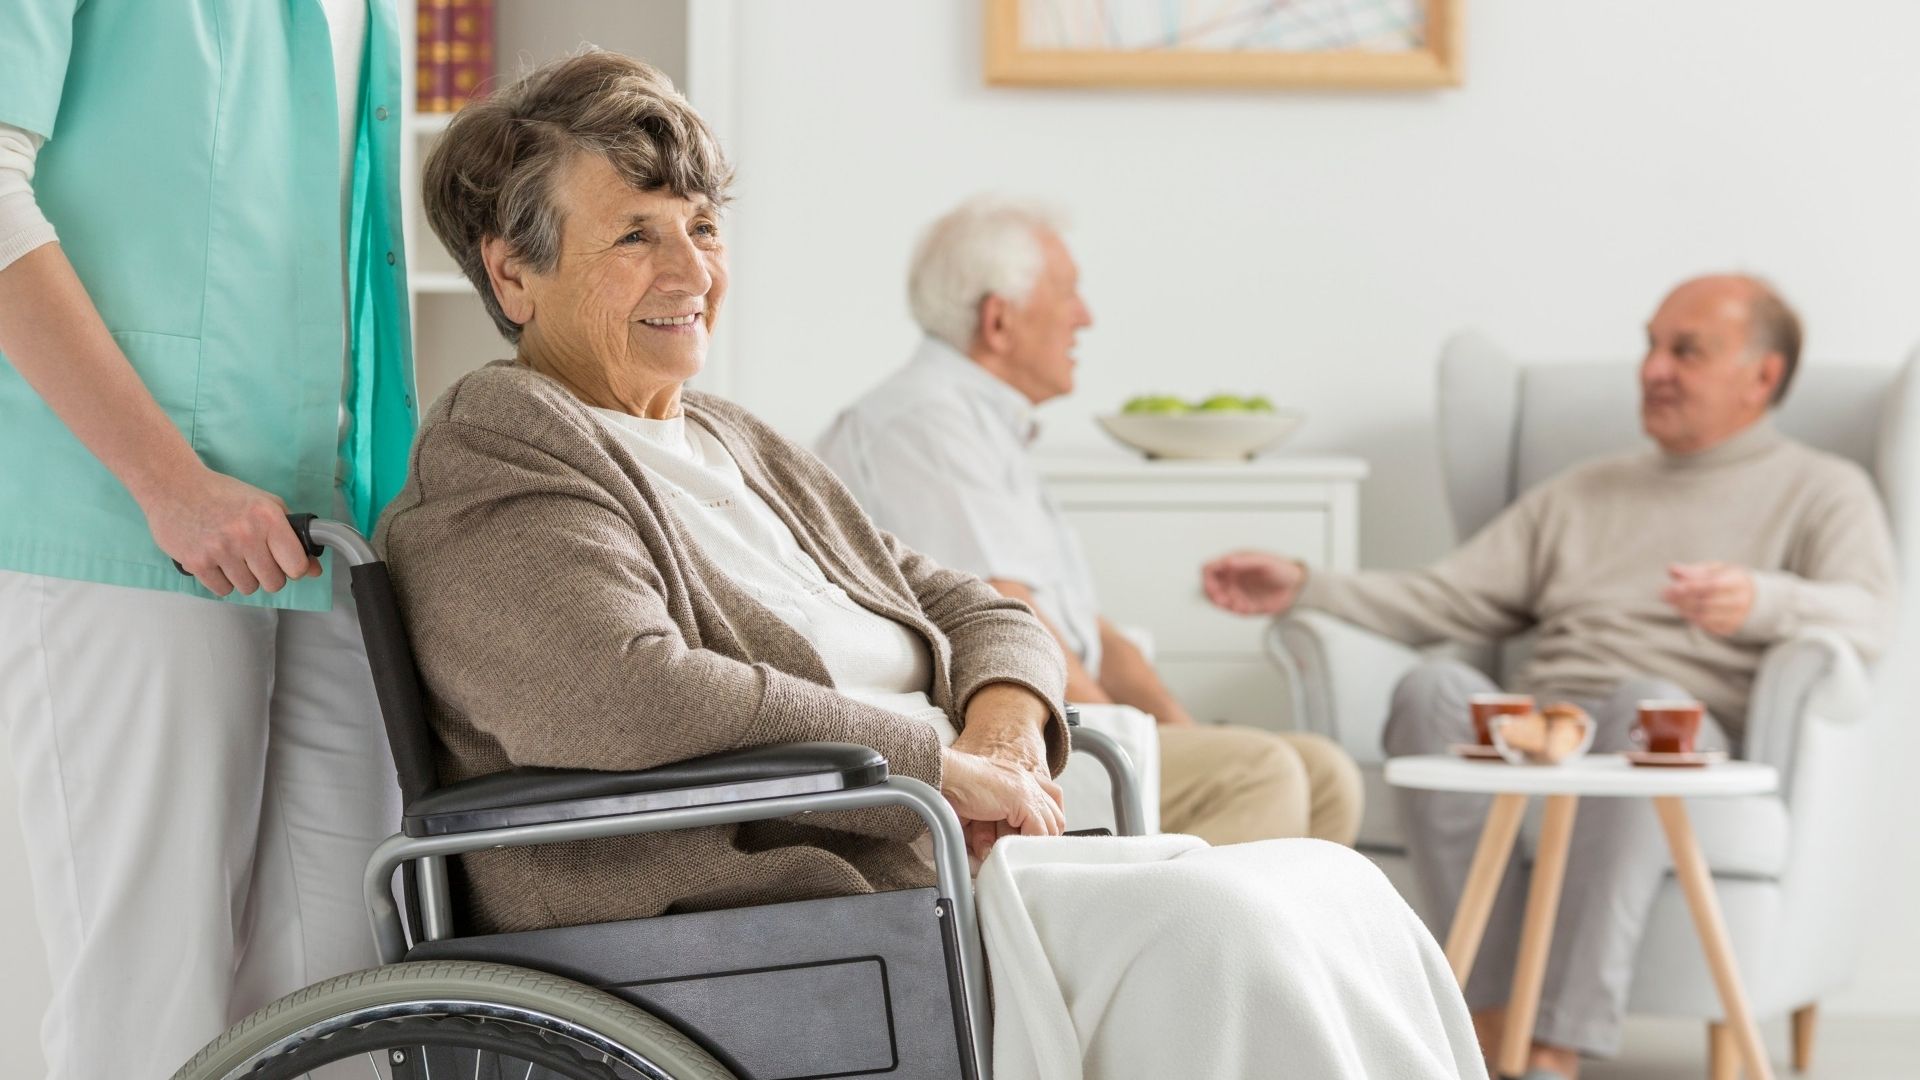 La importancia del servicio de comidas en residencias de mayores